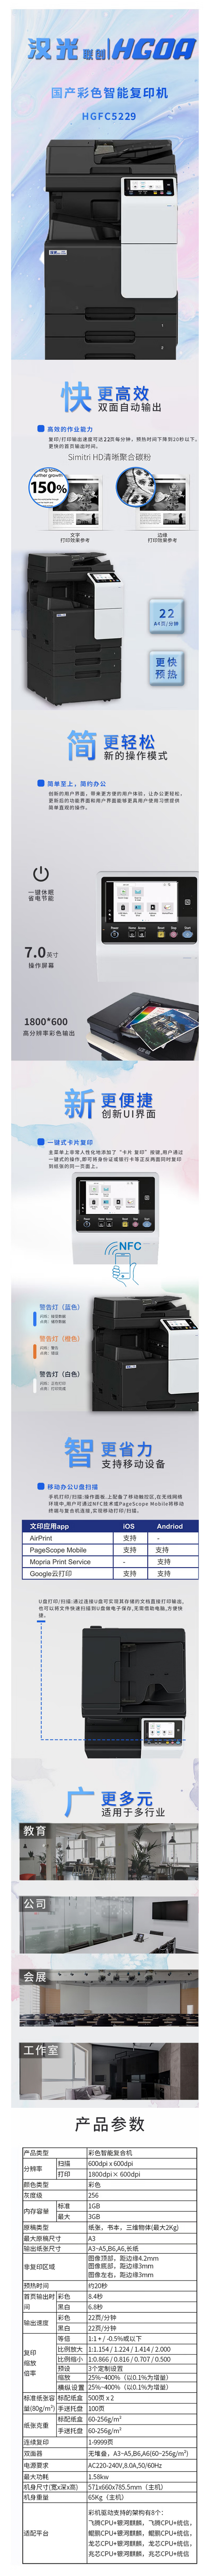 【汉光HGFC5229】汉光联创 HGFC5229 彩色国产智能复合机多功能一体机打印复印扫描办公商.png